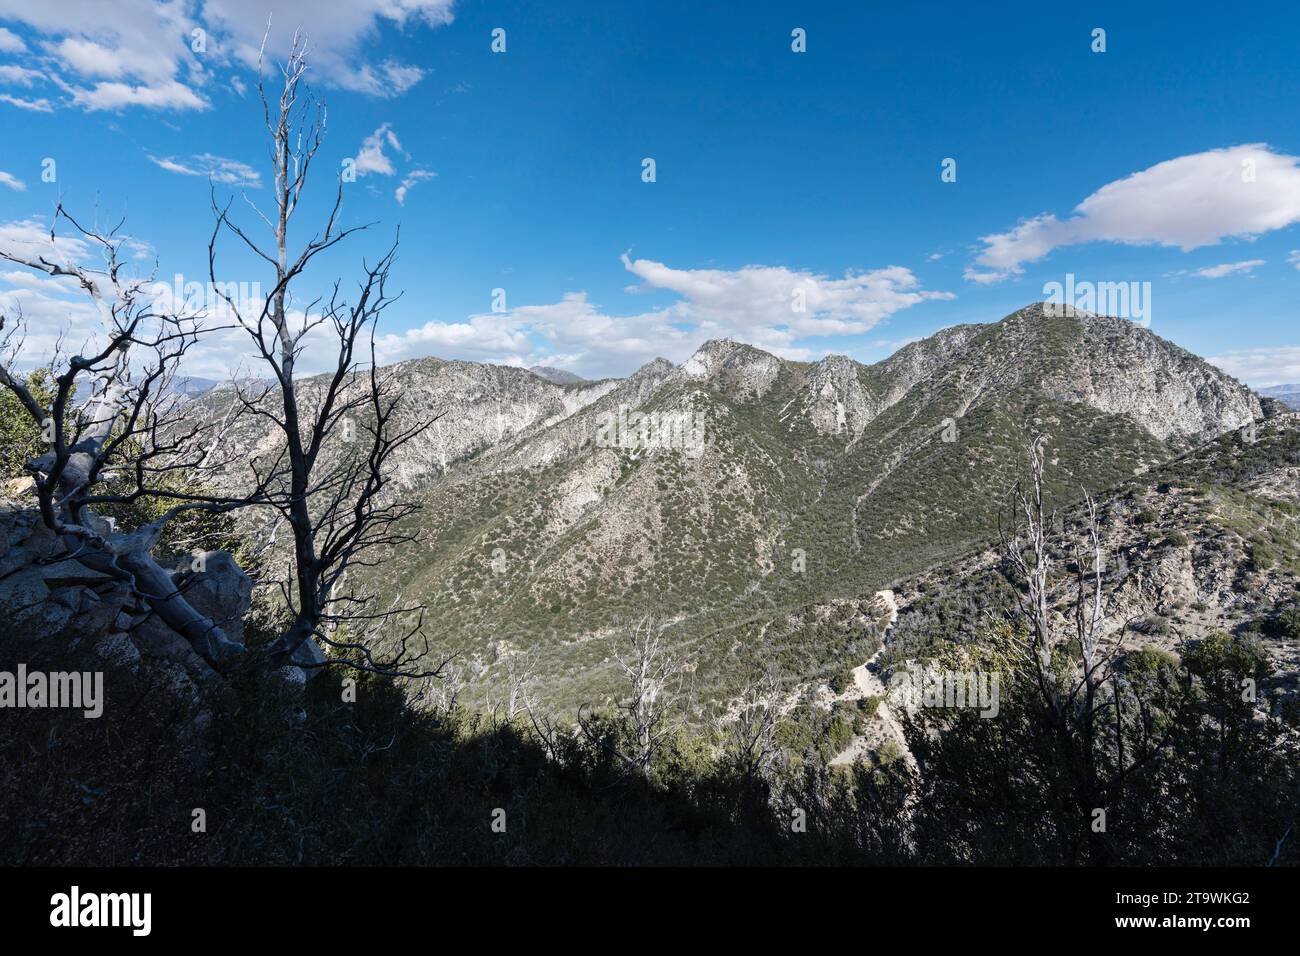 Blick auf den San Gabriel Peak und den Mt Enttäuschung vom Mt Lowe Trail im Angeles National Forest in der Nähe des Mt Wilson in Südkalifornien. Stockfoto